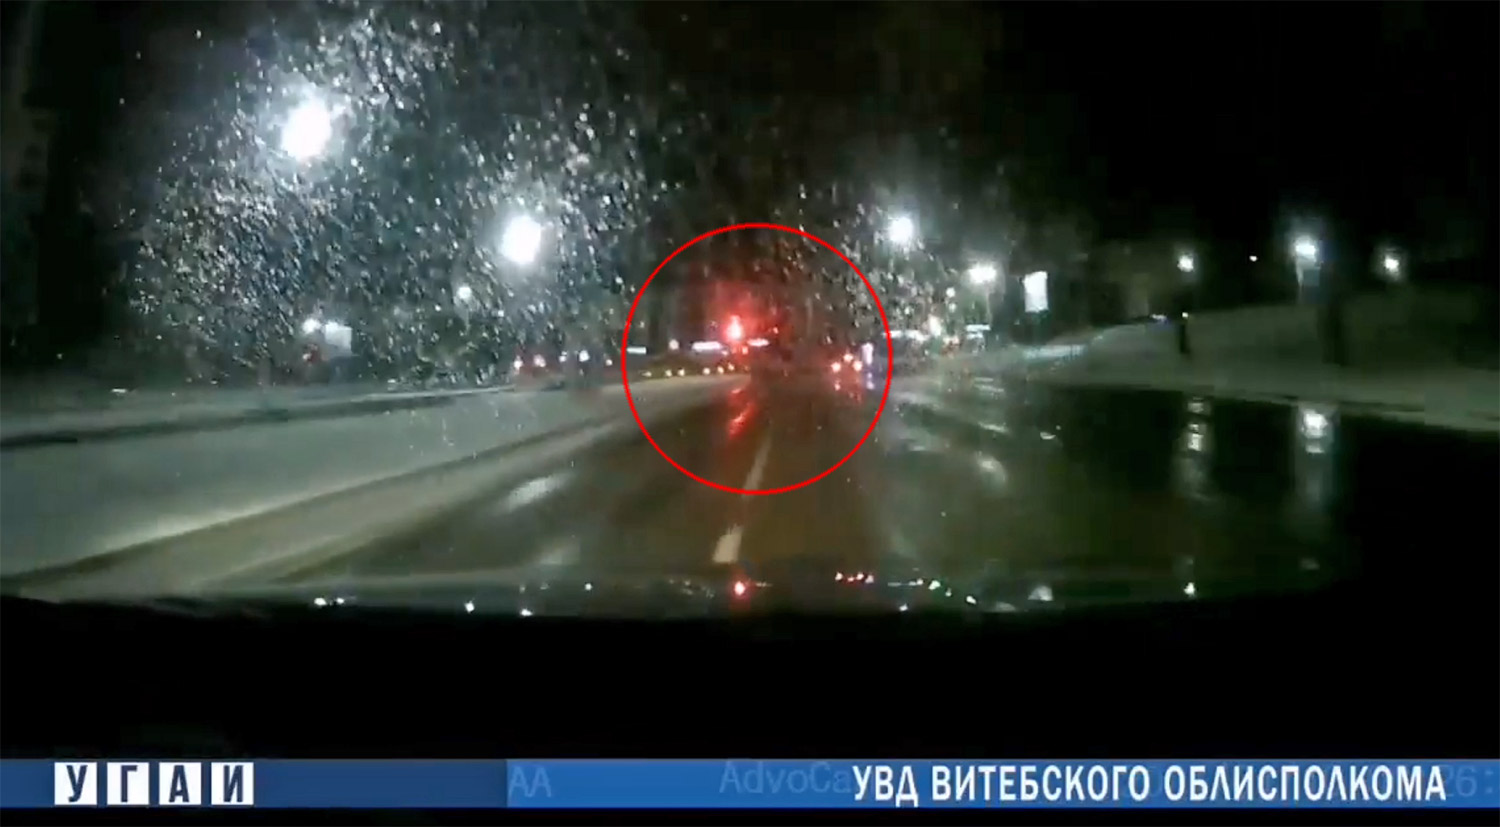 Житель Витебска, севший за руль чужого авто, едва не протаранил городской автобус, когда удирал от преследовавшей его машины ГАИ.